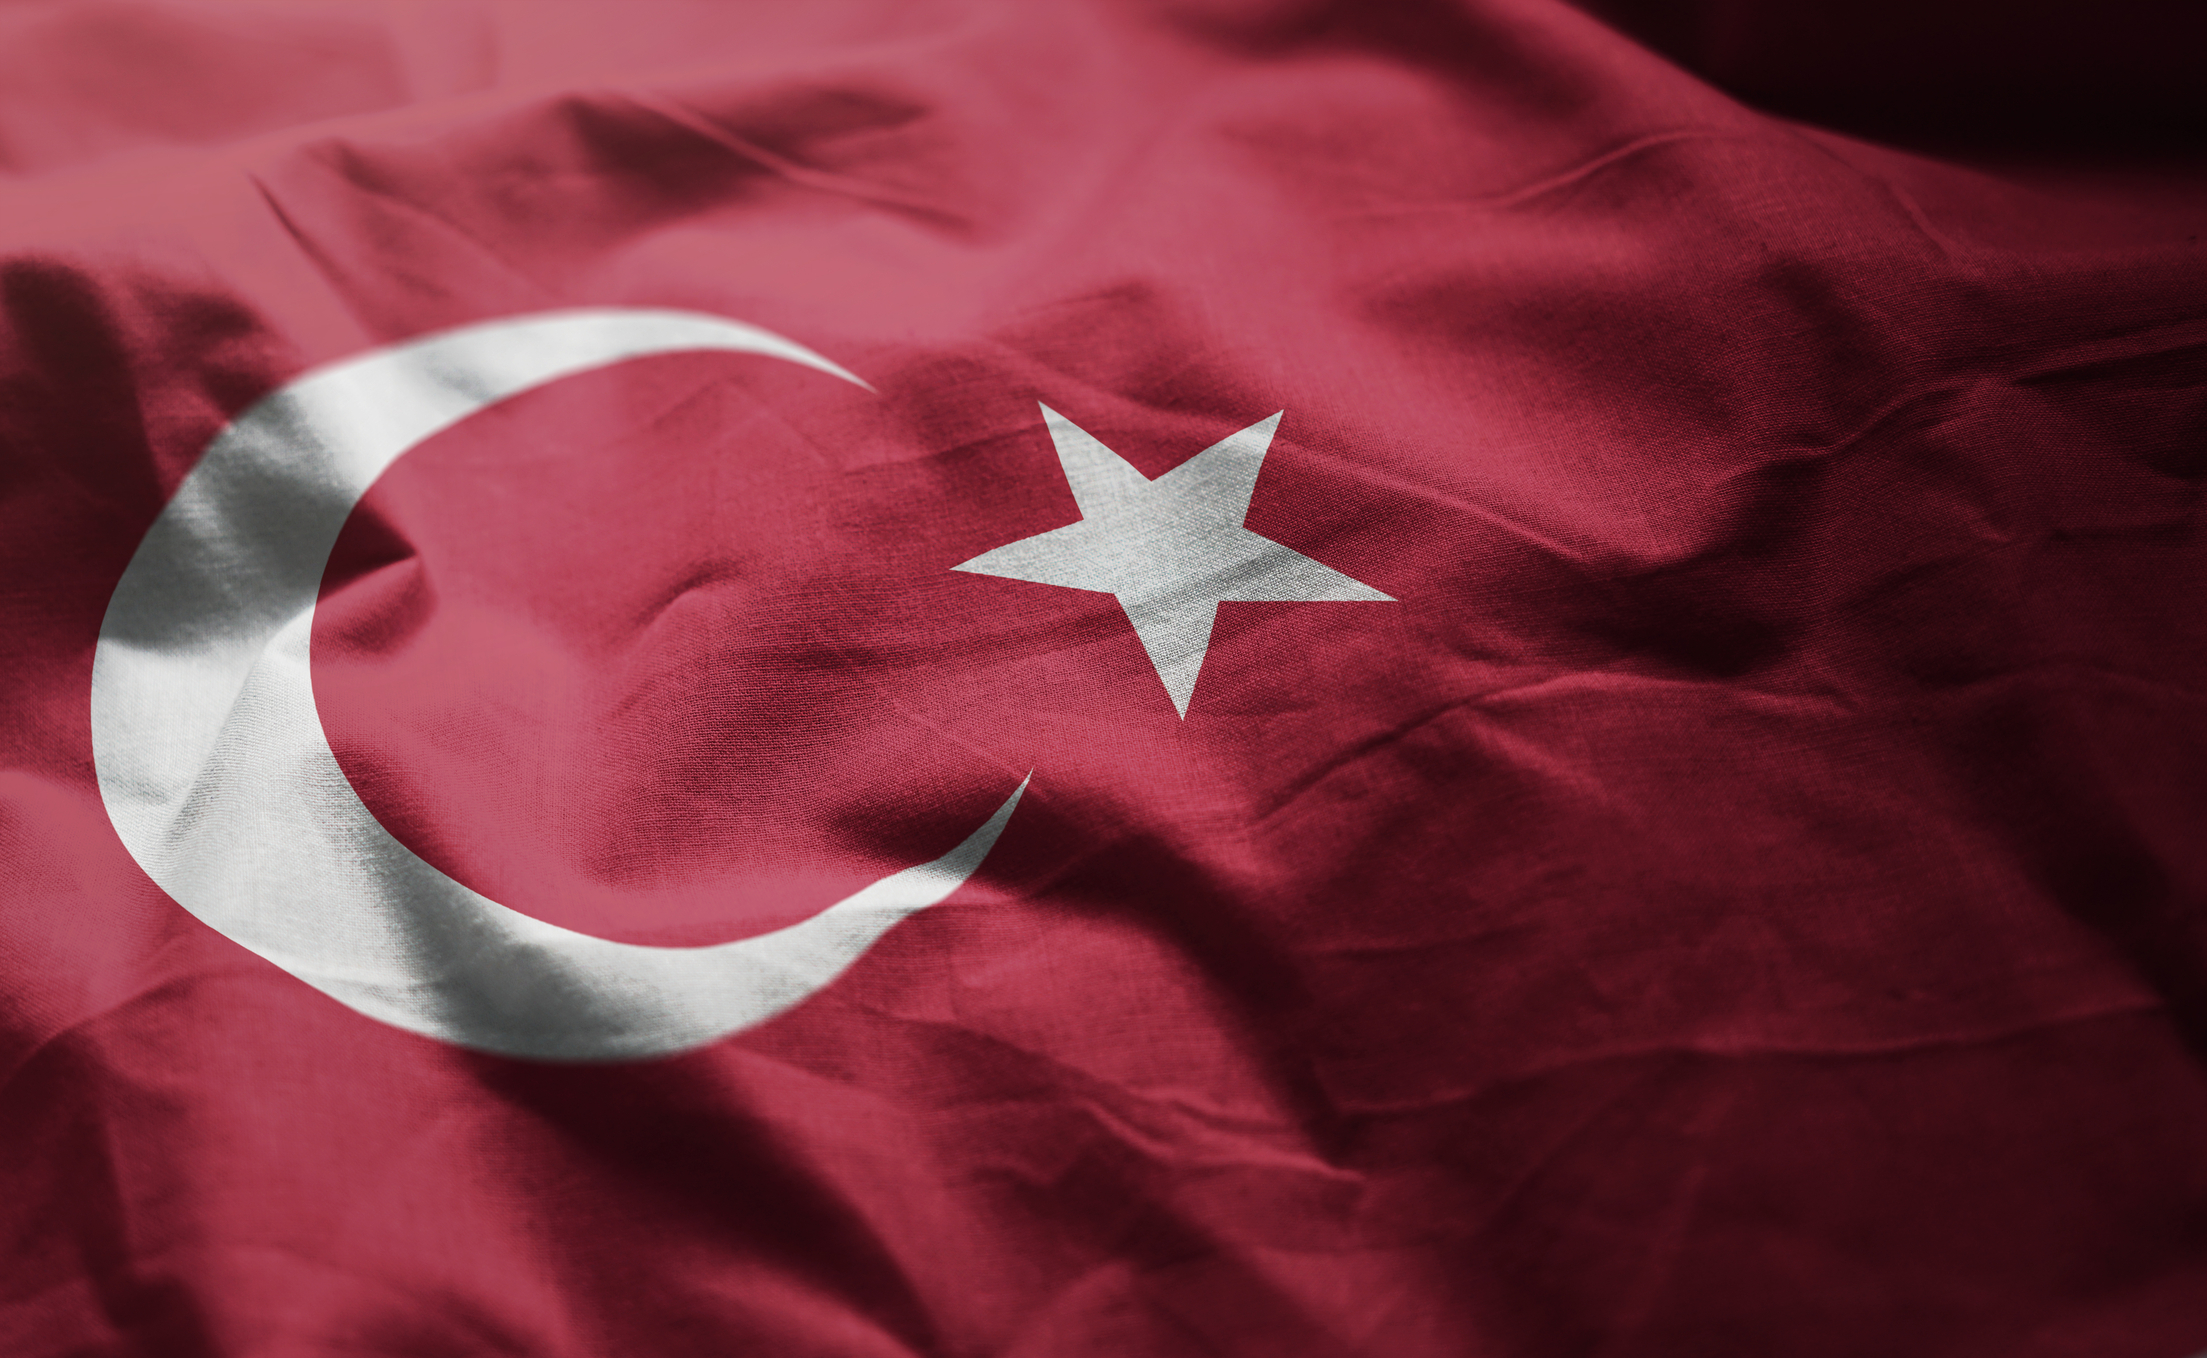 Τουρκία, ισχυρή σχέση με τα Ηνωμένα Αραβικά Εμιράτα.  Οι κεντρικές τράπεζες υπέγραψαν νέα συμφωνία που θα διευκολύνει το εμπόριο – Κεφάλαιο